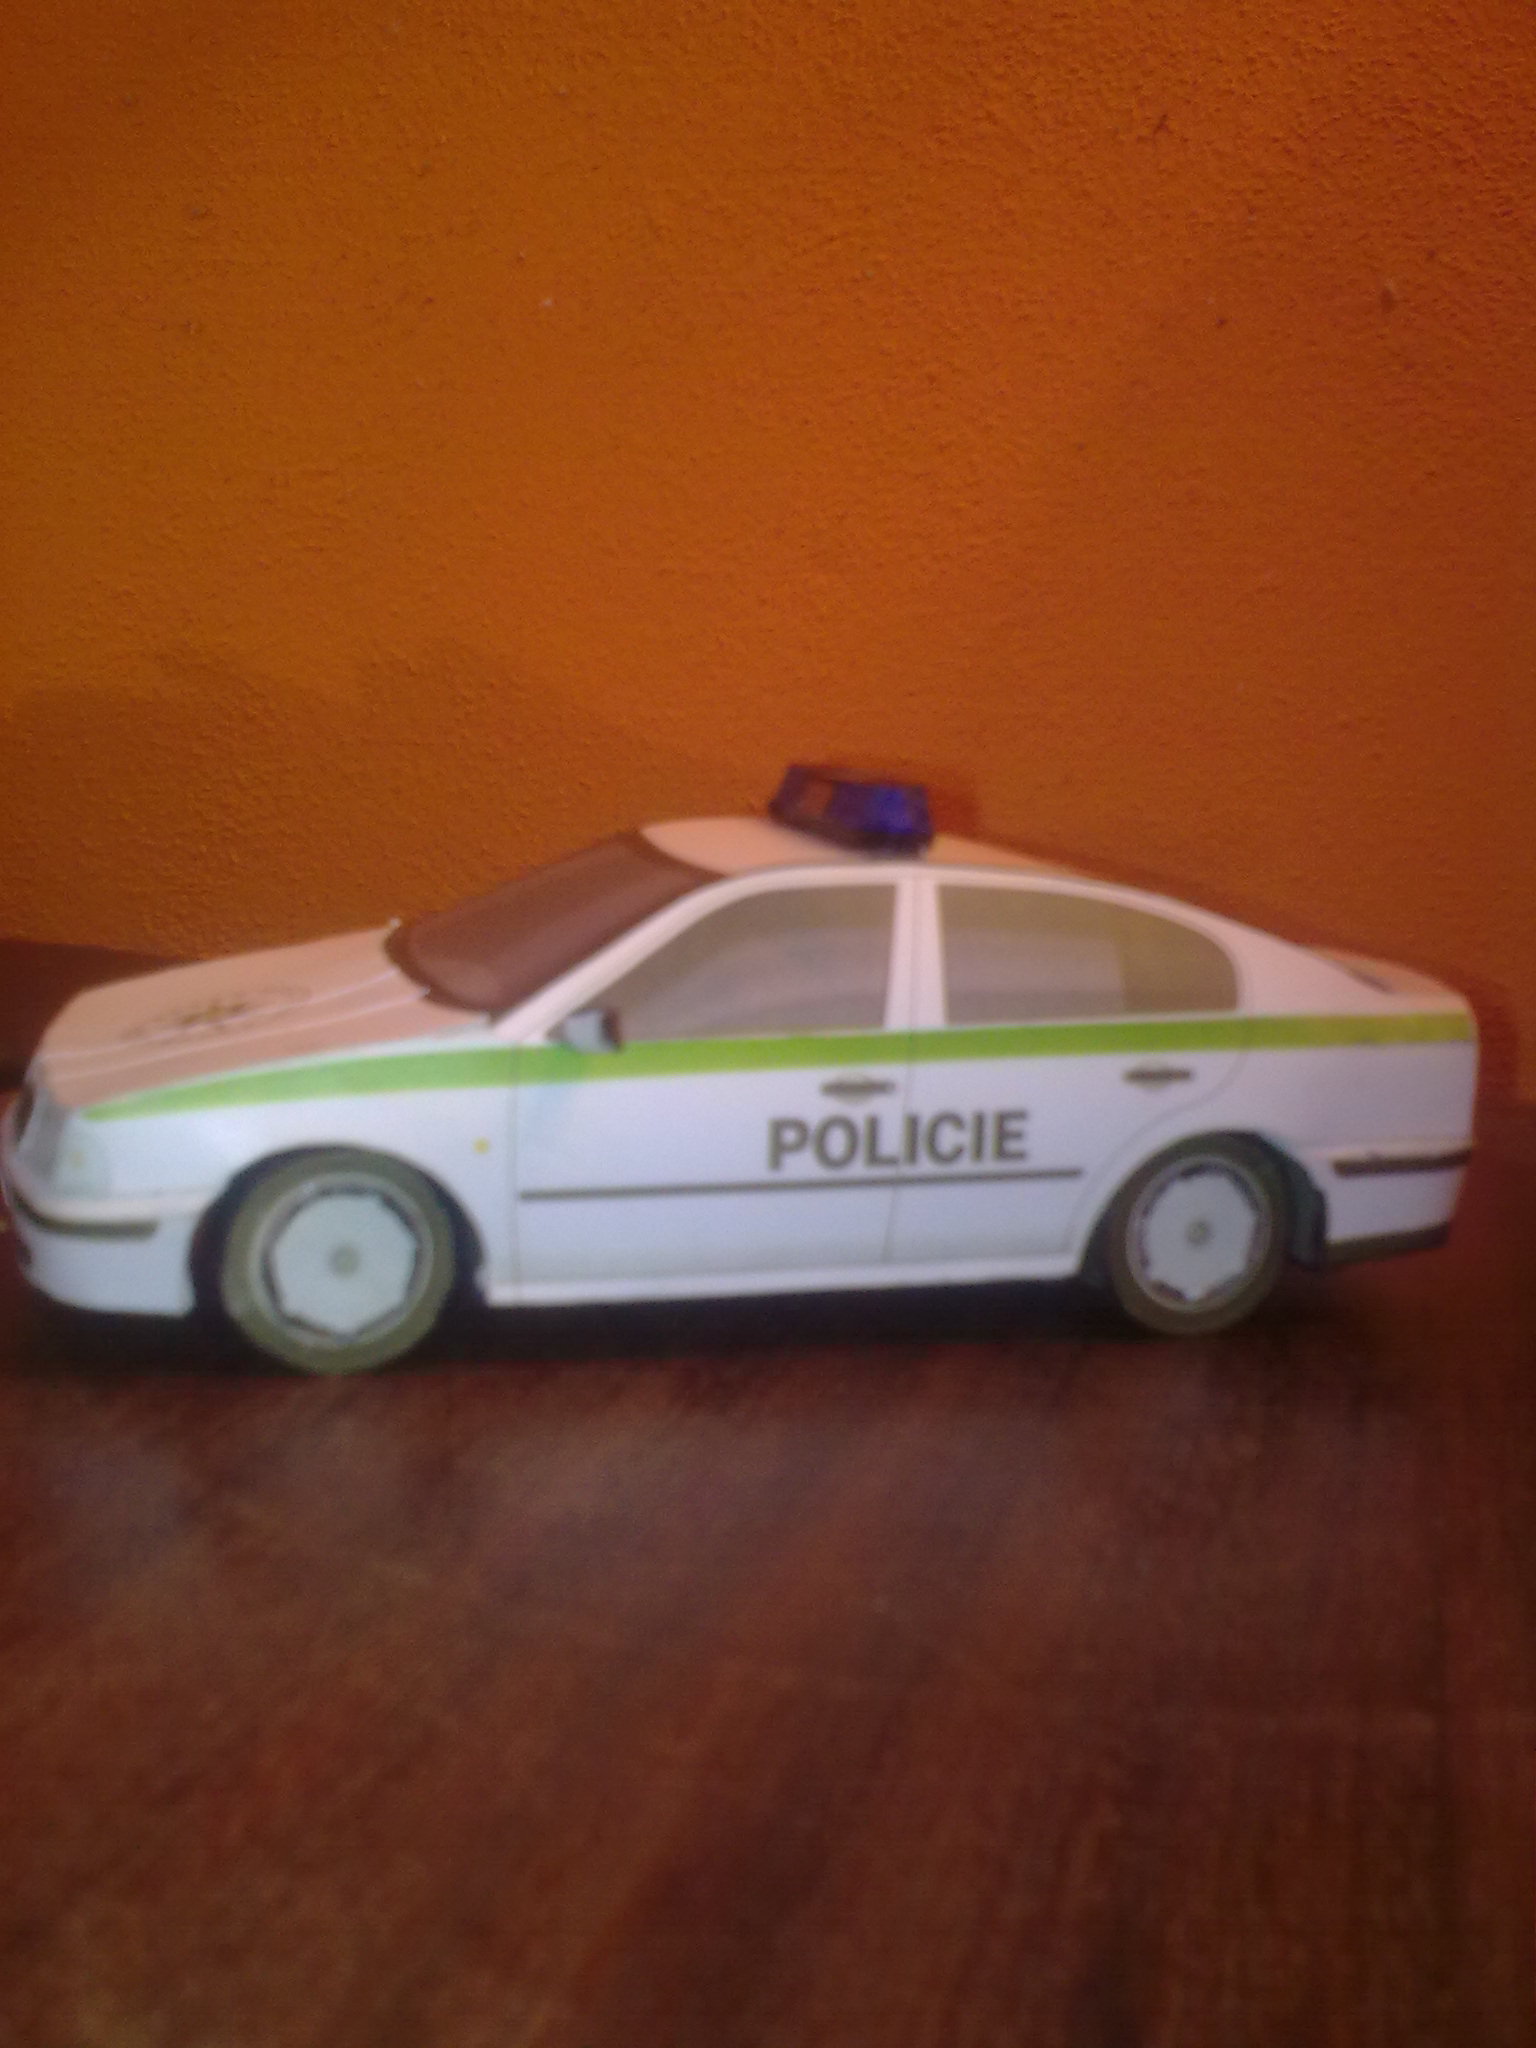 Policie ČR Praha